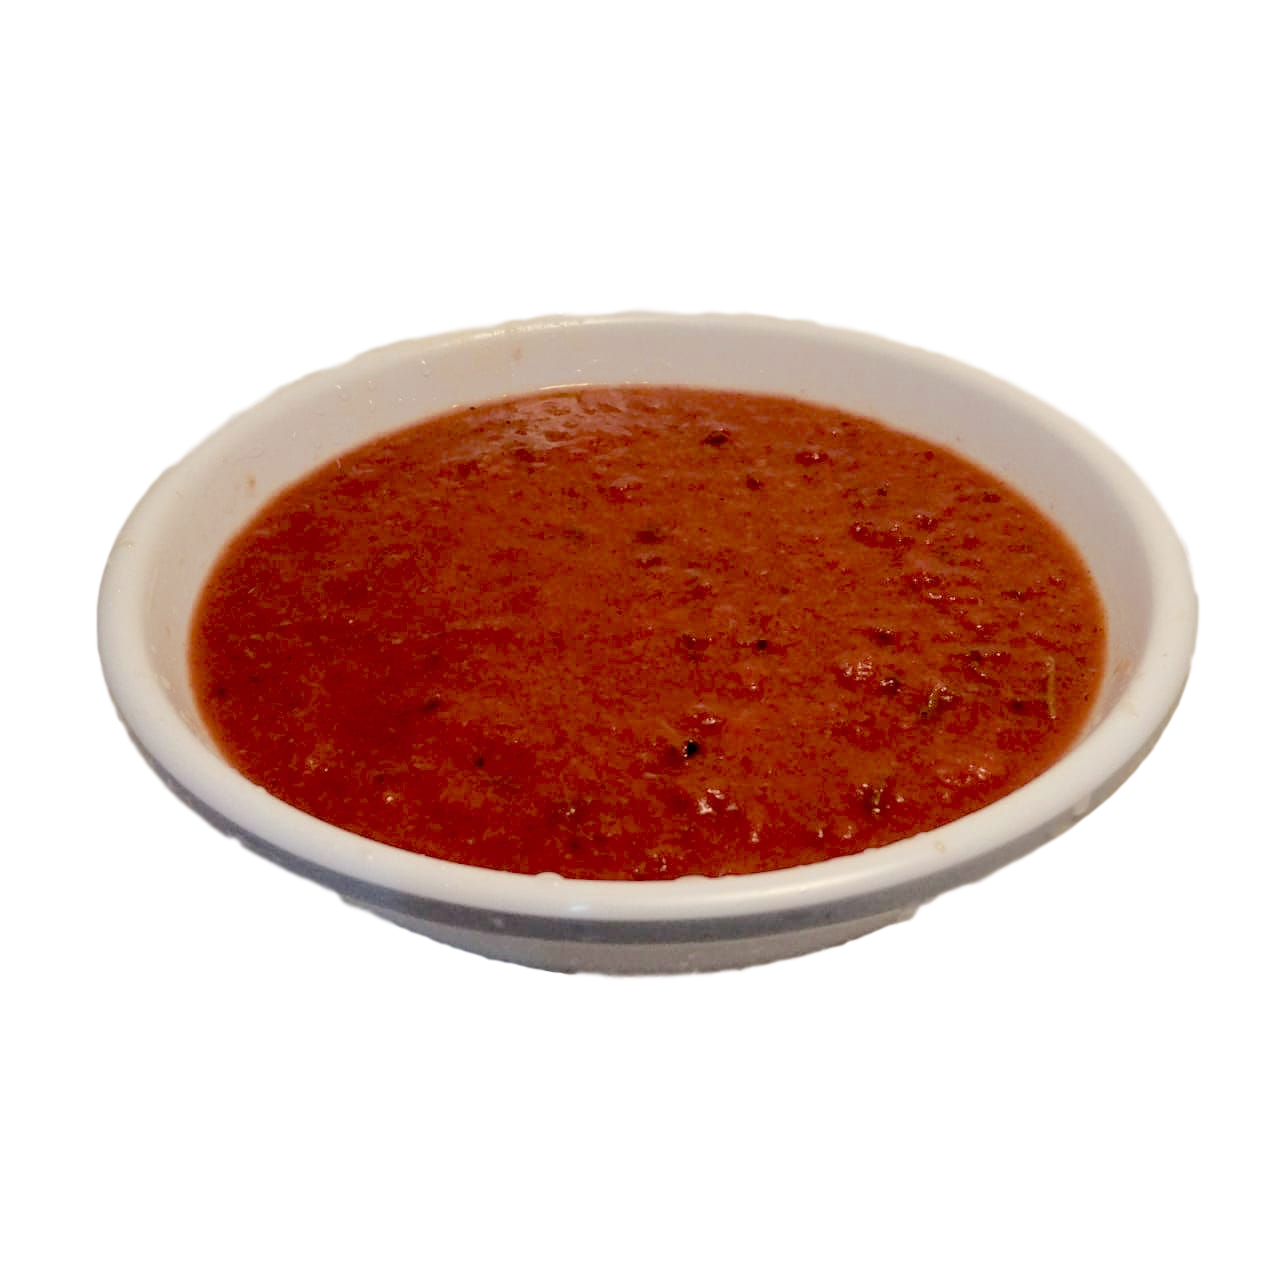 Savoury roasted tomato basil soup pureed with Kalamata olives.